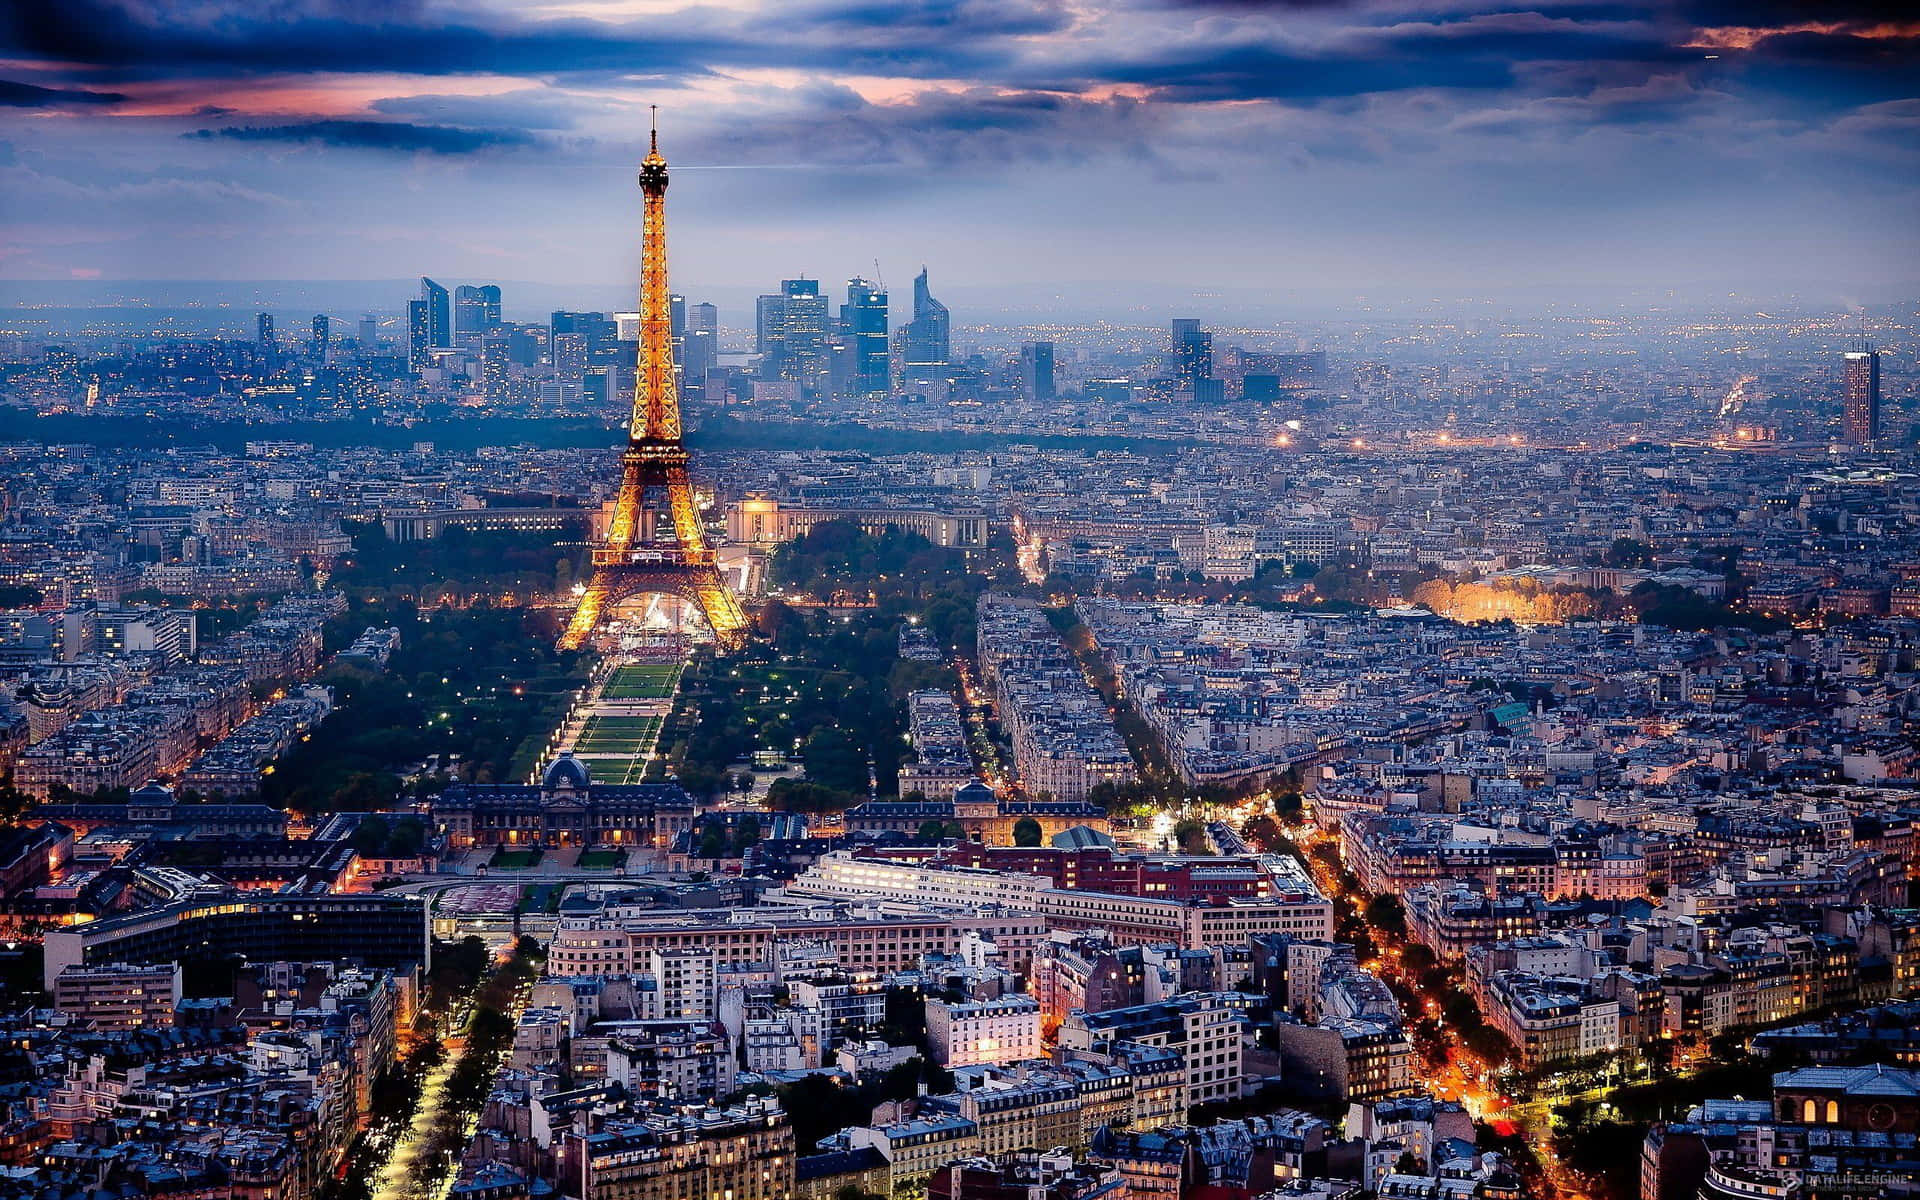 Franskeiffeltornet Och Paris På Natten Bild